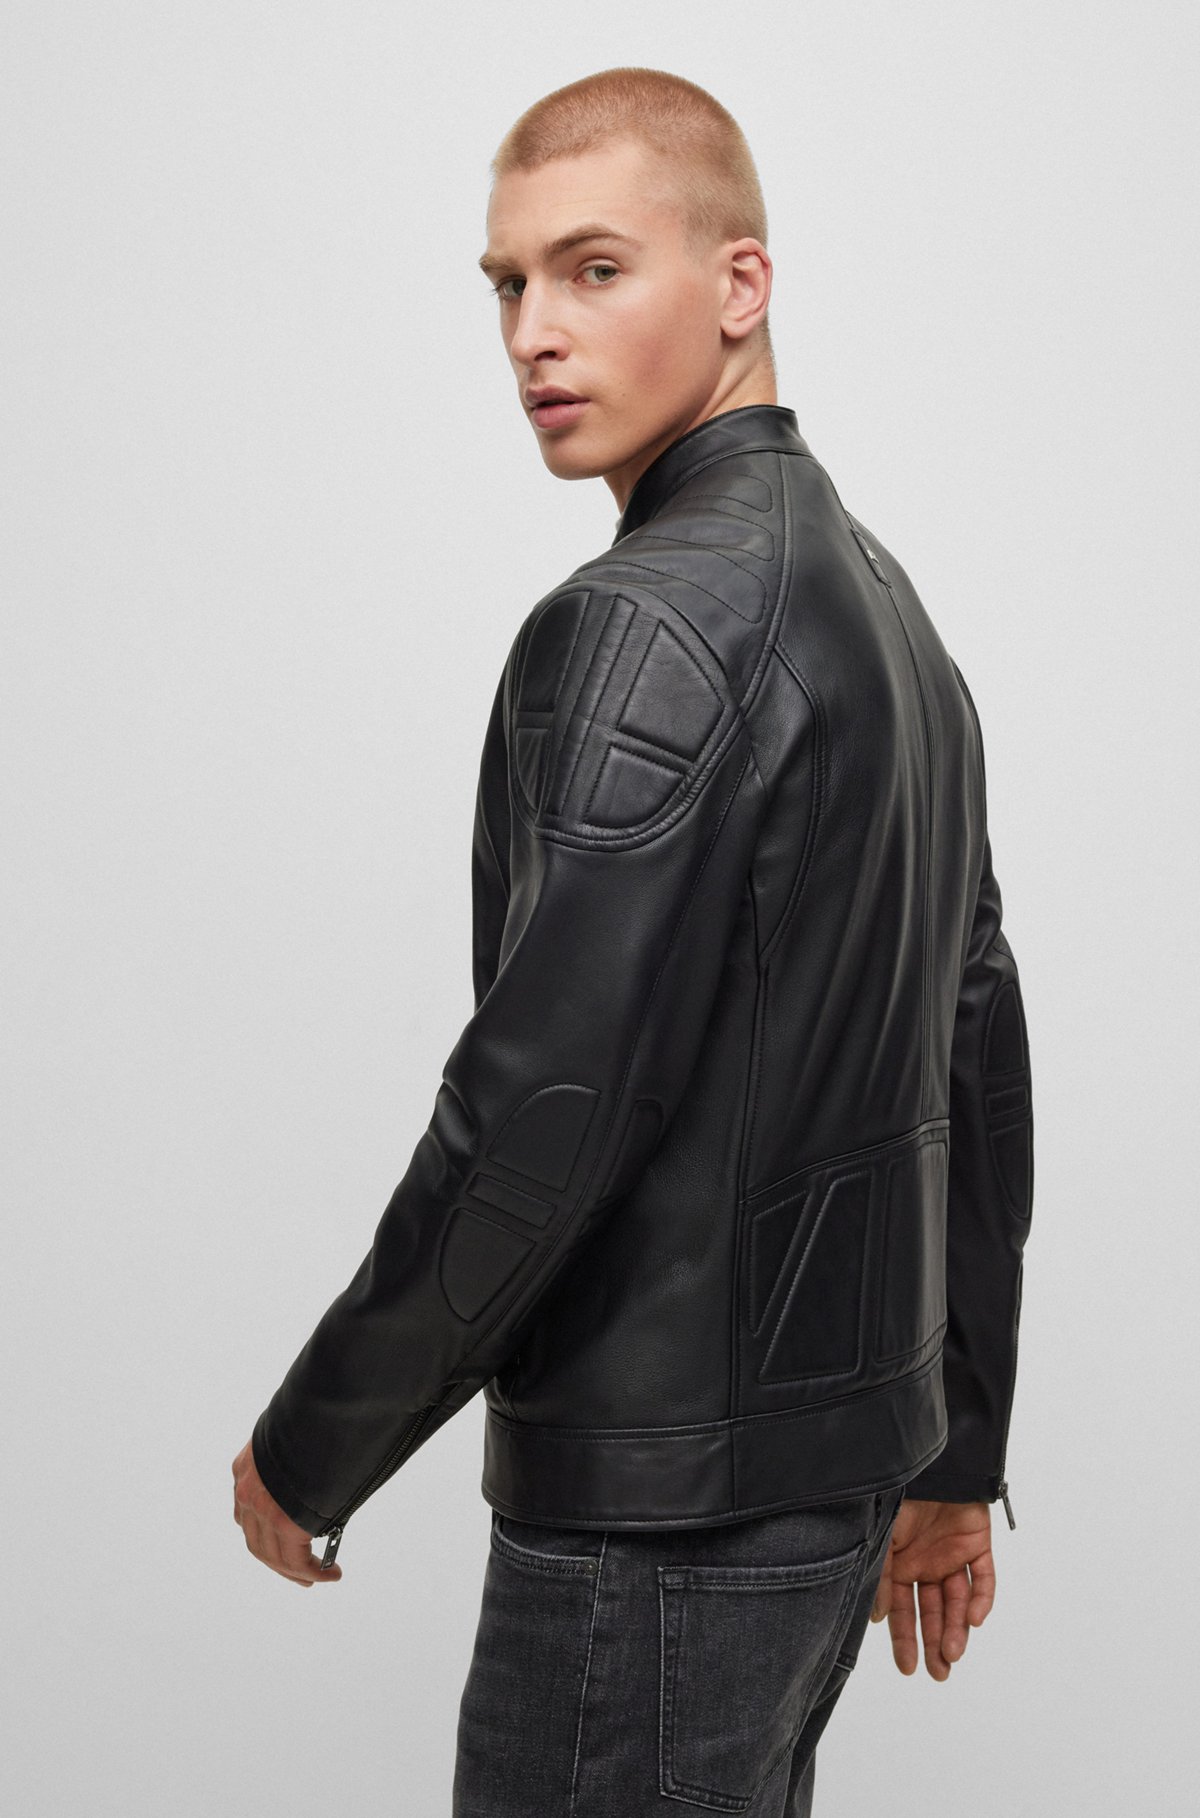 Hugo Boss Leather Biker Jacket Mens Sale Online | bellvalefarms.com